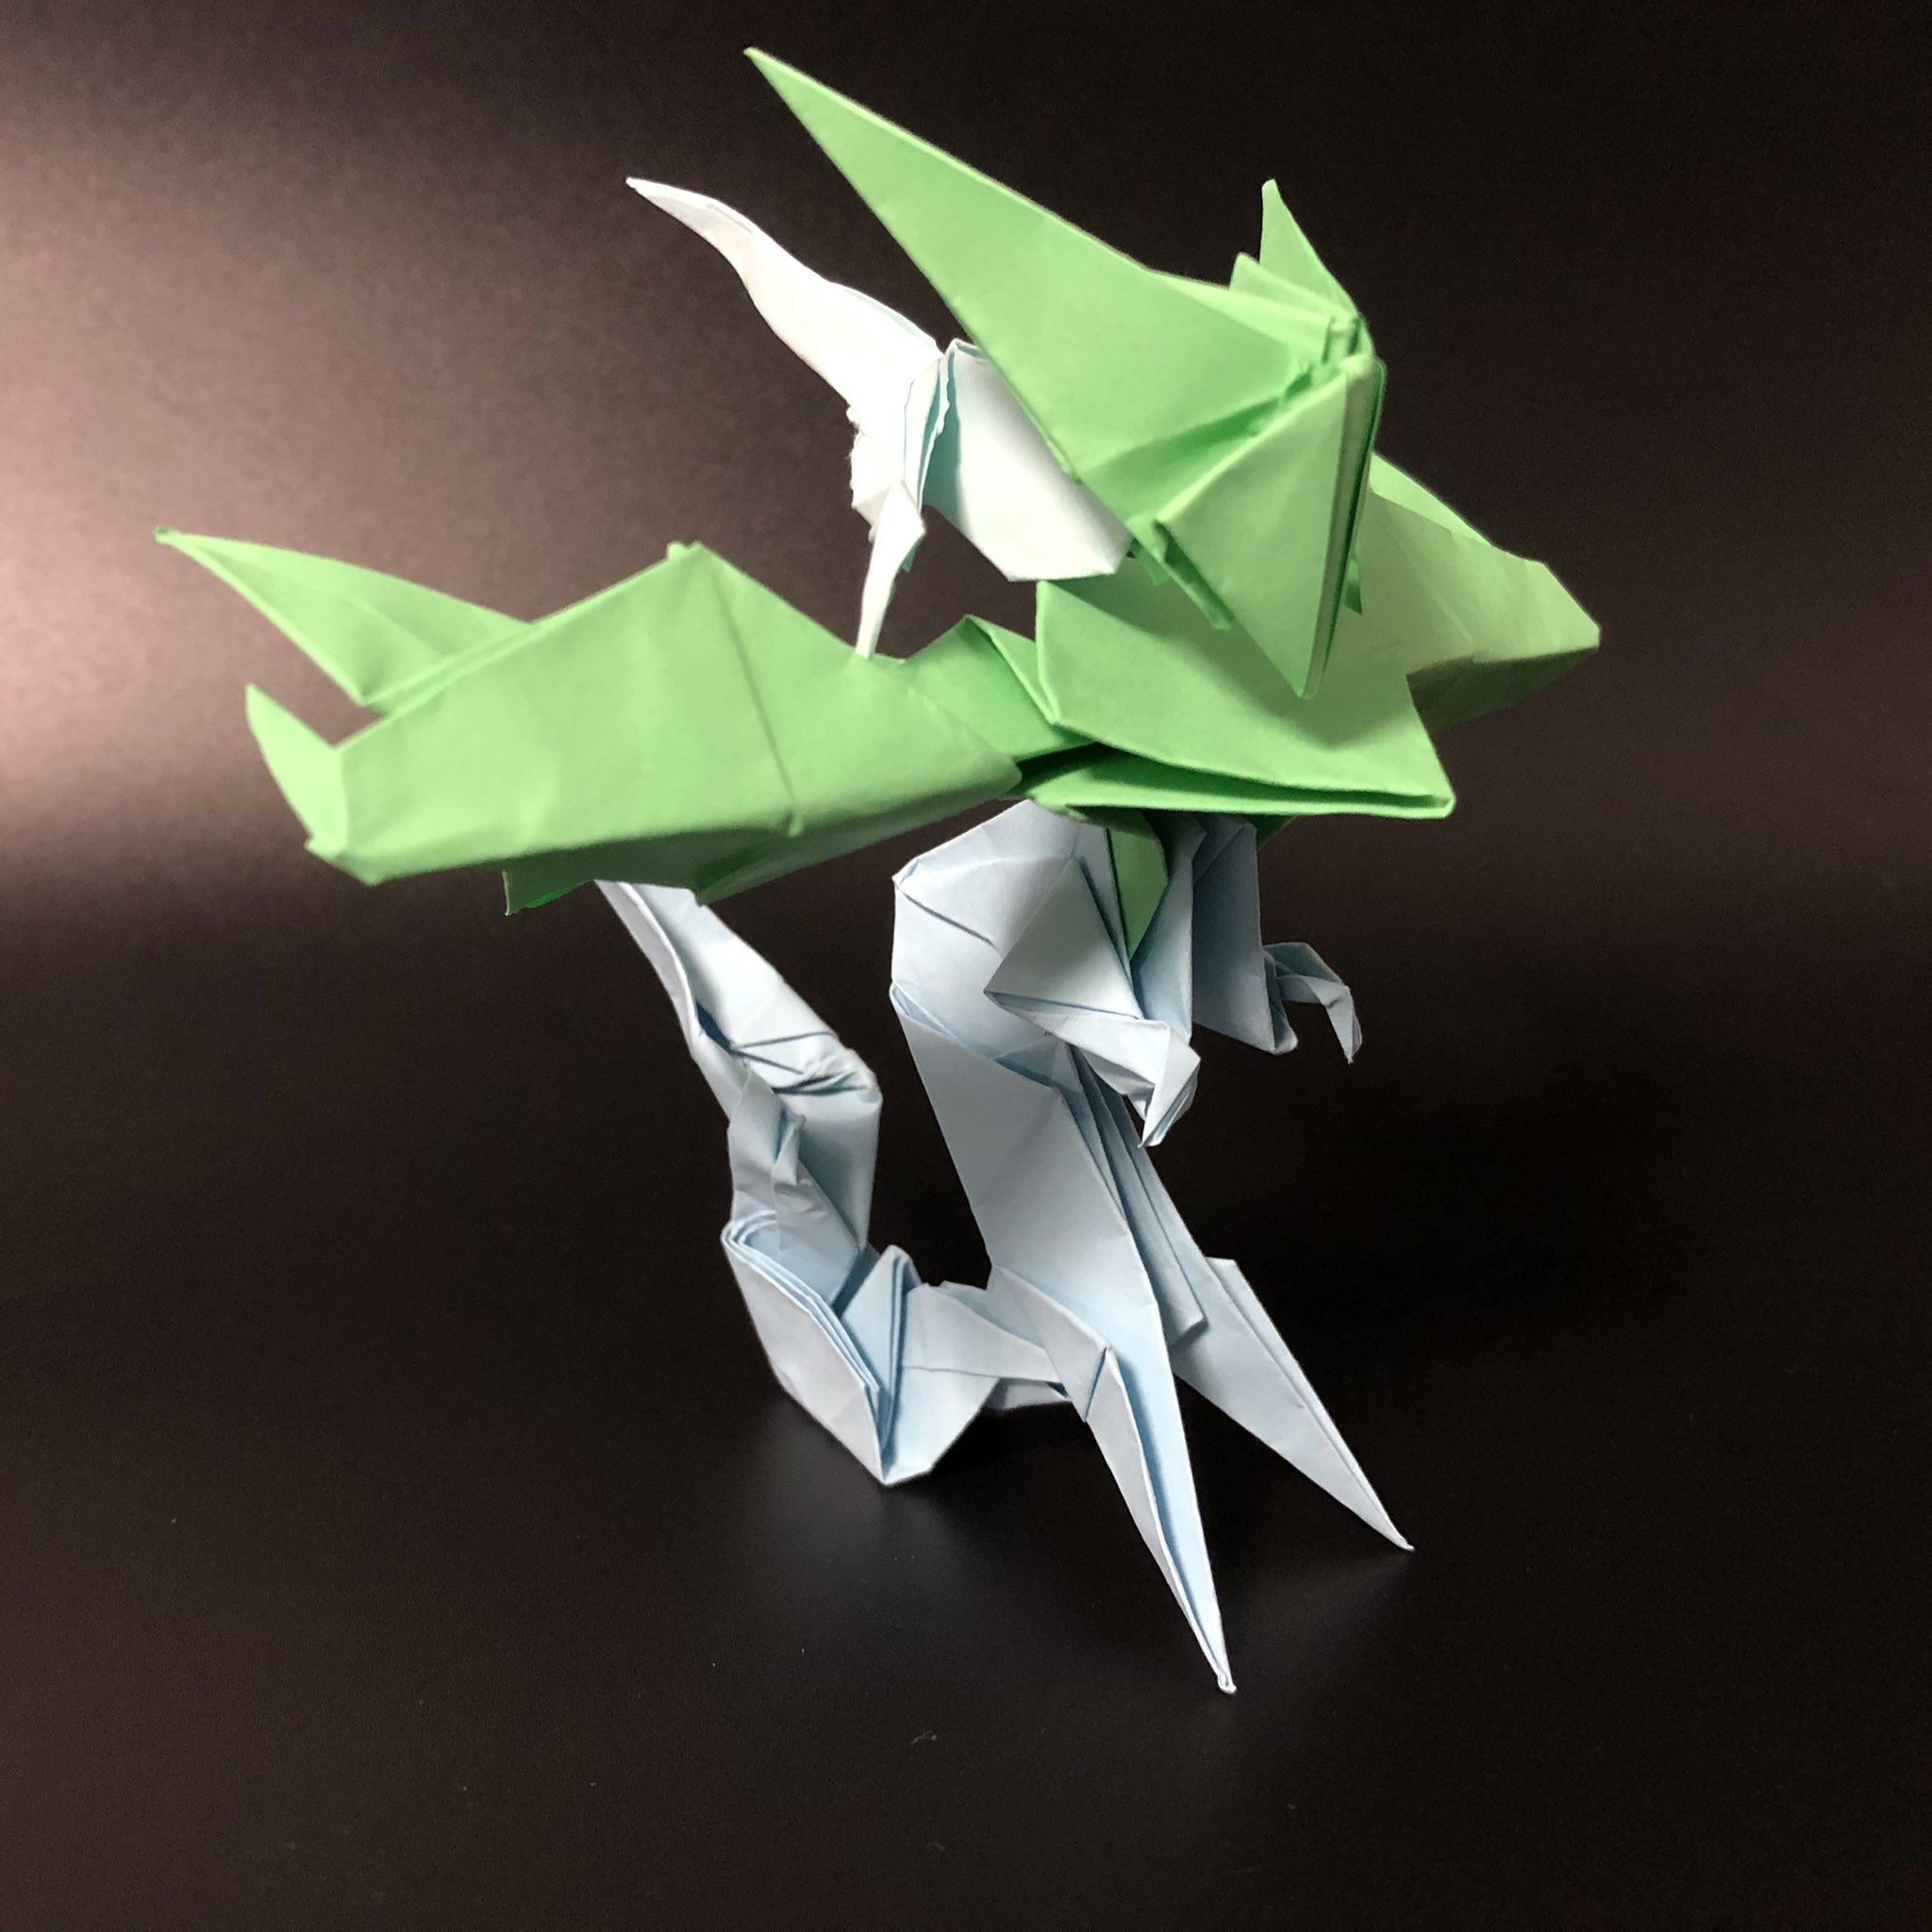 ট ইট র りょうすけ 組み立て折神工房assembly Origami Workshop また 制作過程をyoutubeの方で公開しています よろしければホームページからご覧ください٩ W و 折り紙 ユニーク折り紙 組み立て折り紙 折り紙好きと繋がりたい ポケモン ドラゴン